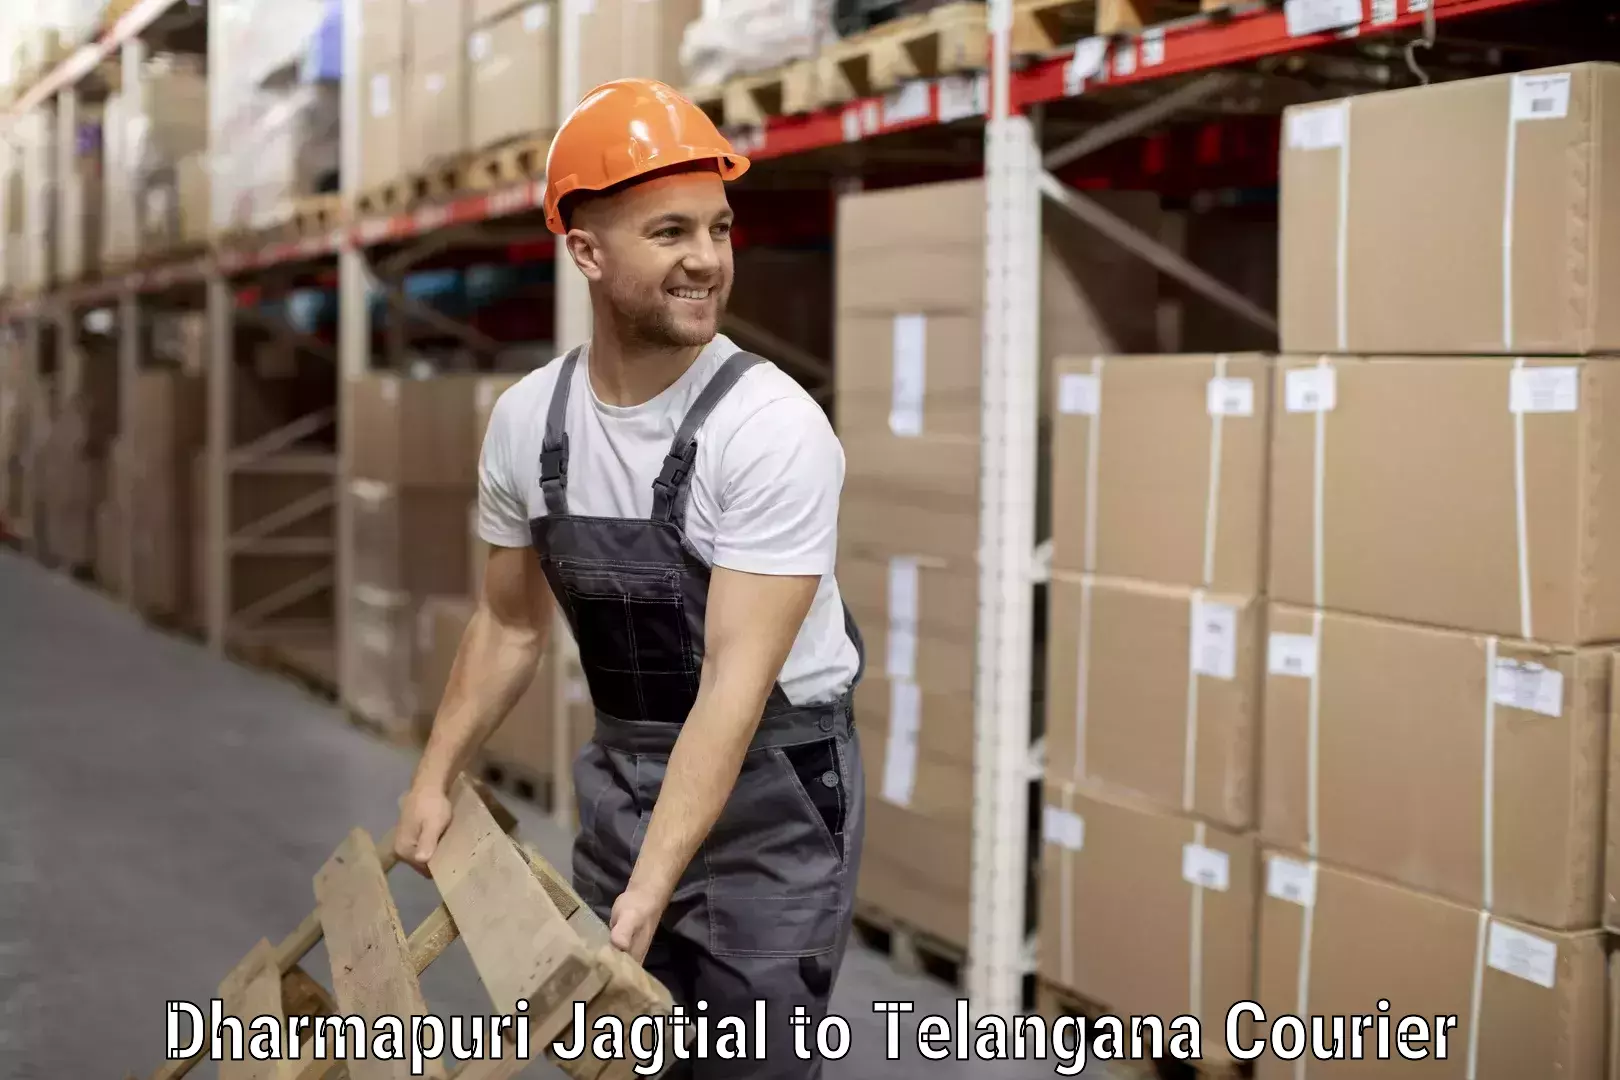 Citywide baggage courier Dharmapuri Jagtial to Dornakal